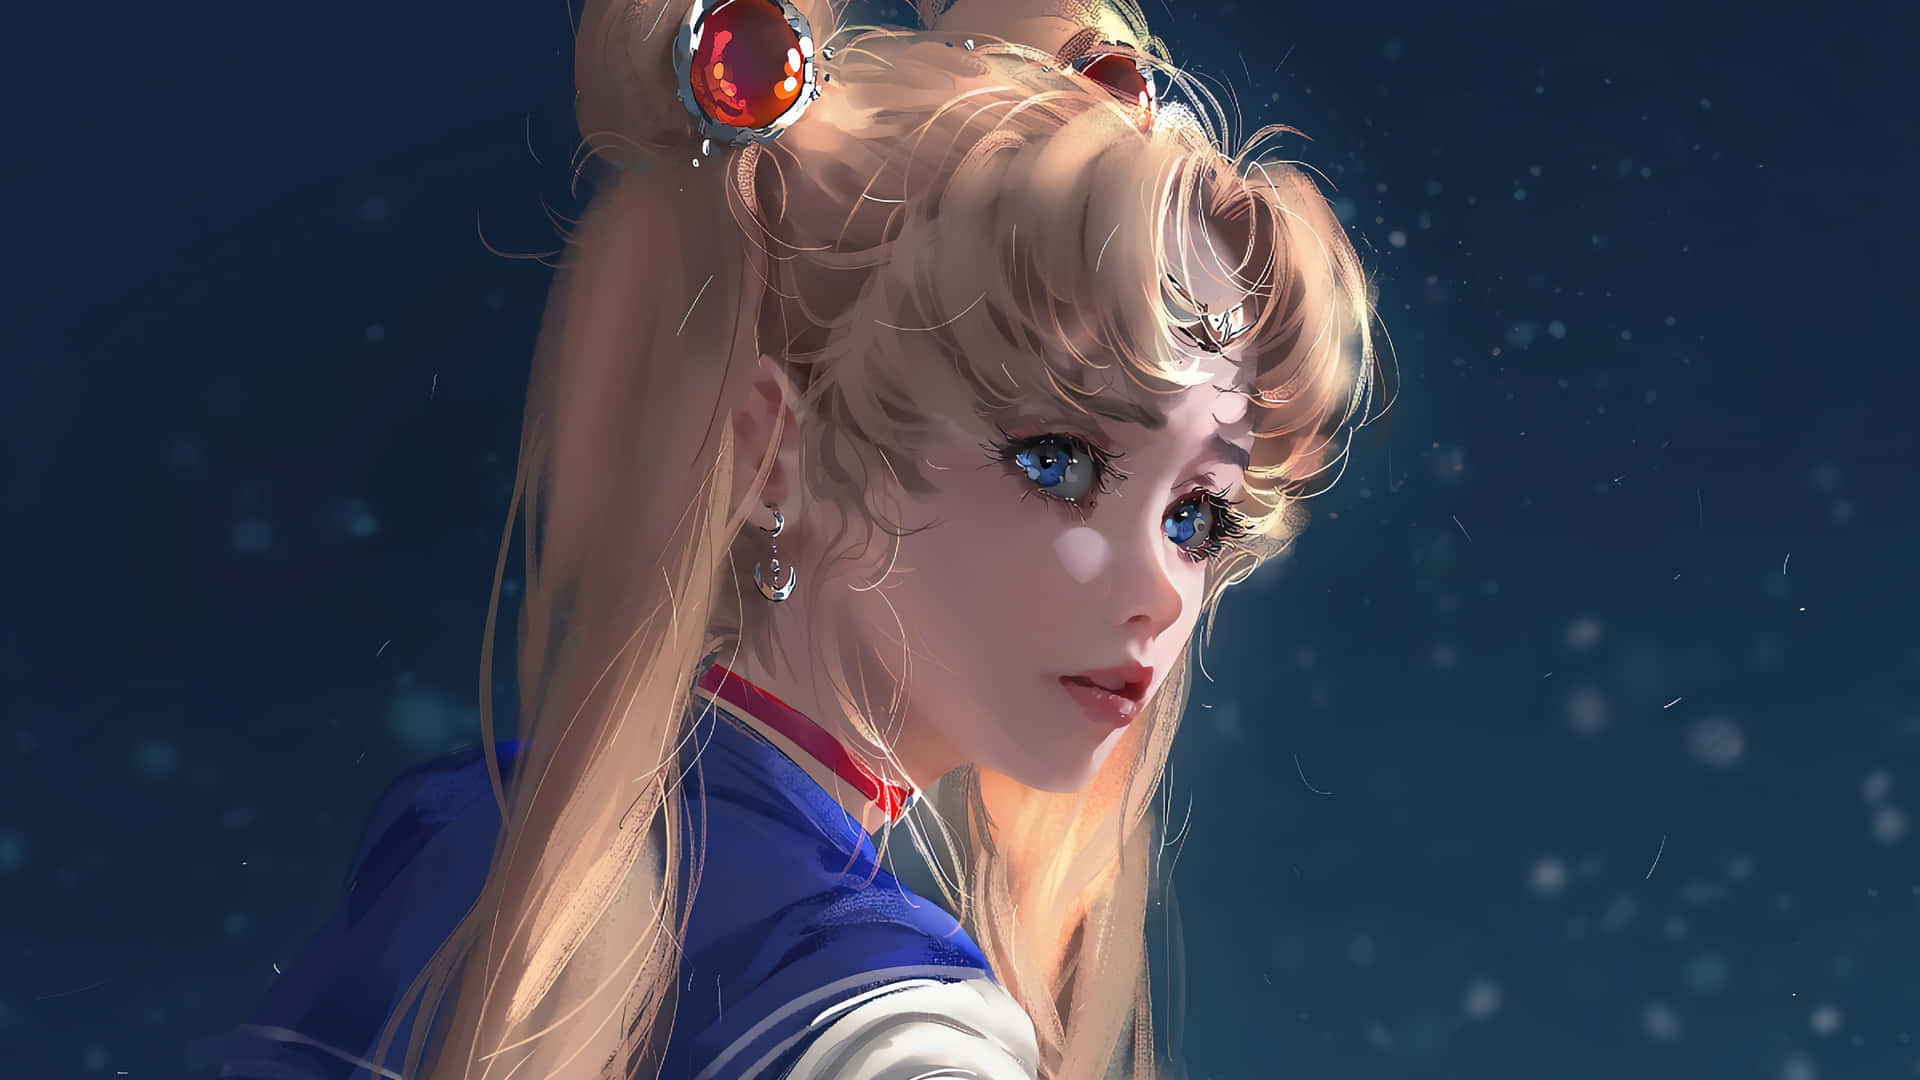 Realistisk Sailor Moon PFP. Wallpaper